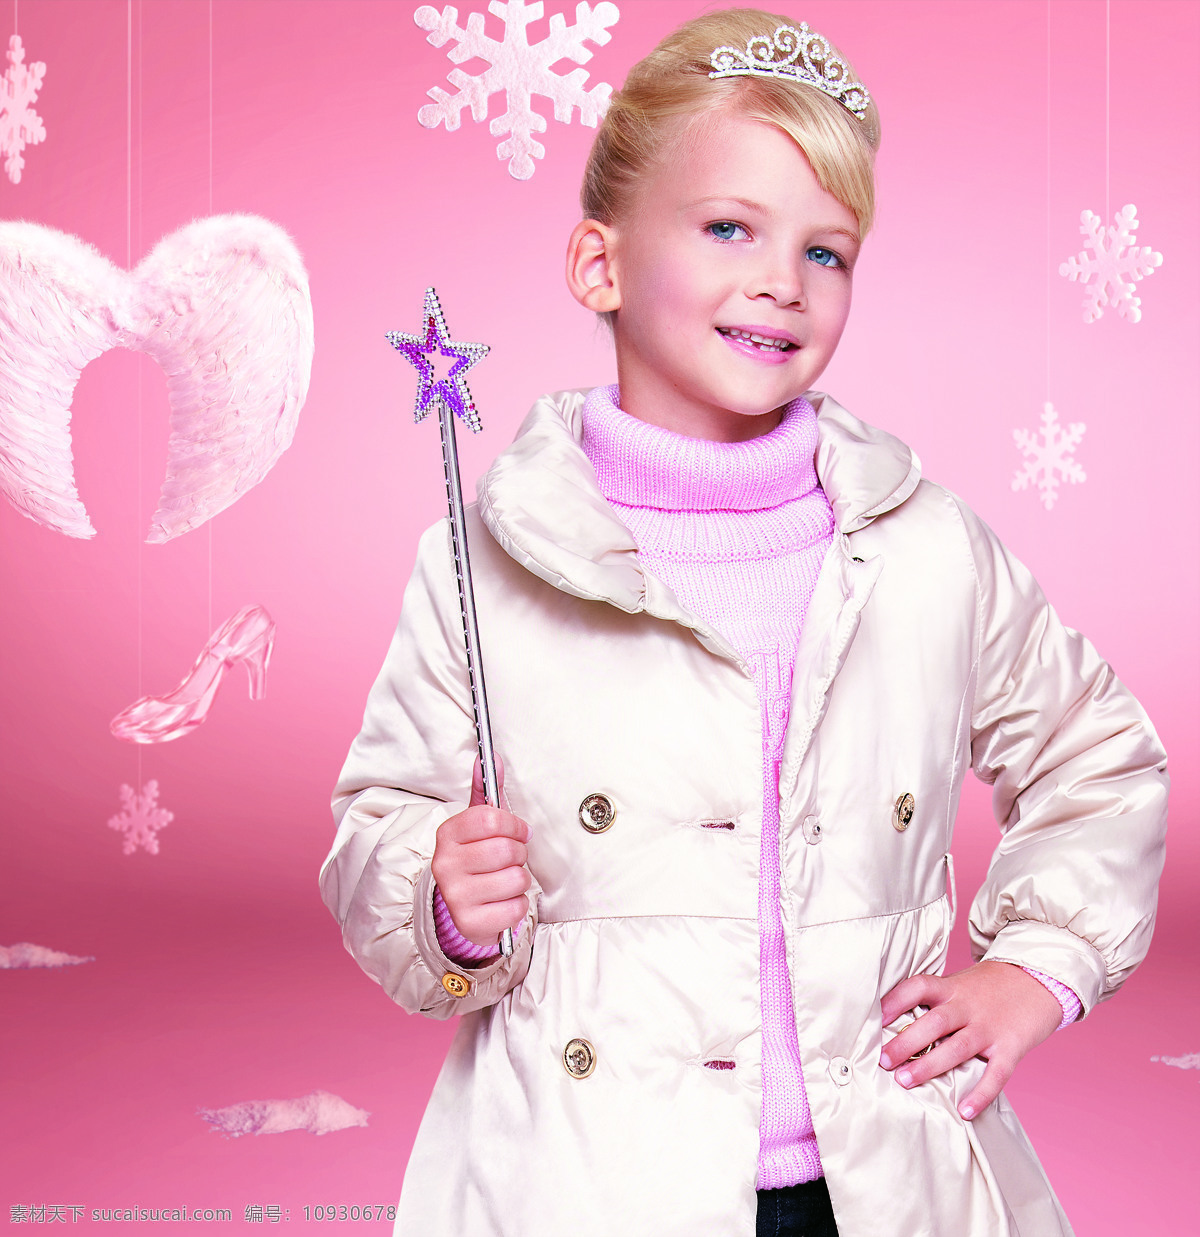 女孩 外国 金发 小天使 粉色 背景 童装 雪花 儿童幼儿 人物图库